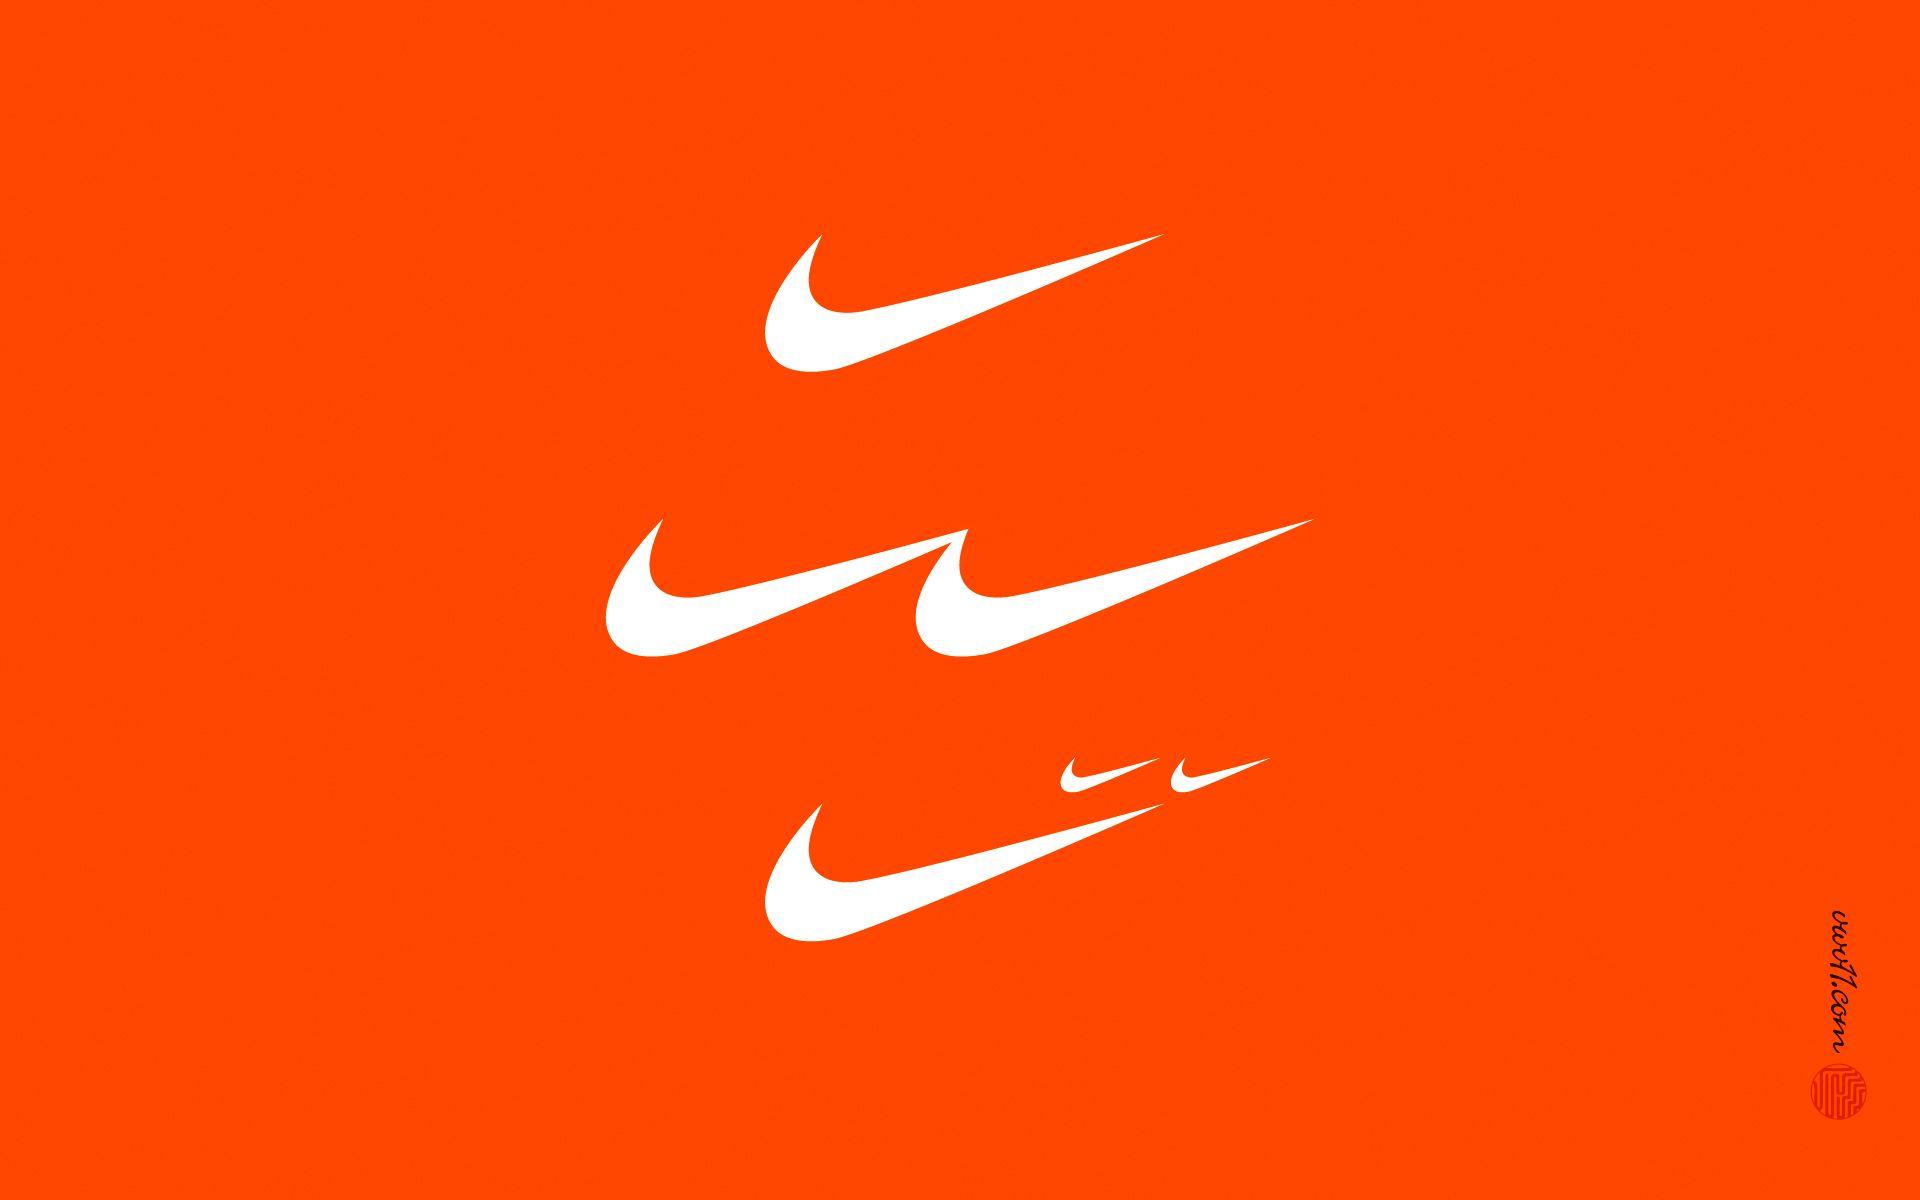 Bạn là fan của Nike và muốn tìm một nền ảnh cho điện thoại của mình hợp thời trang và ấn tượng? Hãy xem ngay bộ sưu tập Nike Orange Wallpapers của chúng tôi. Đây là một \